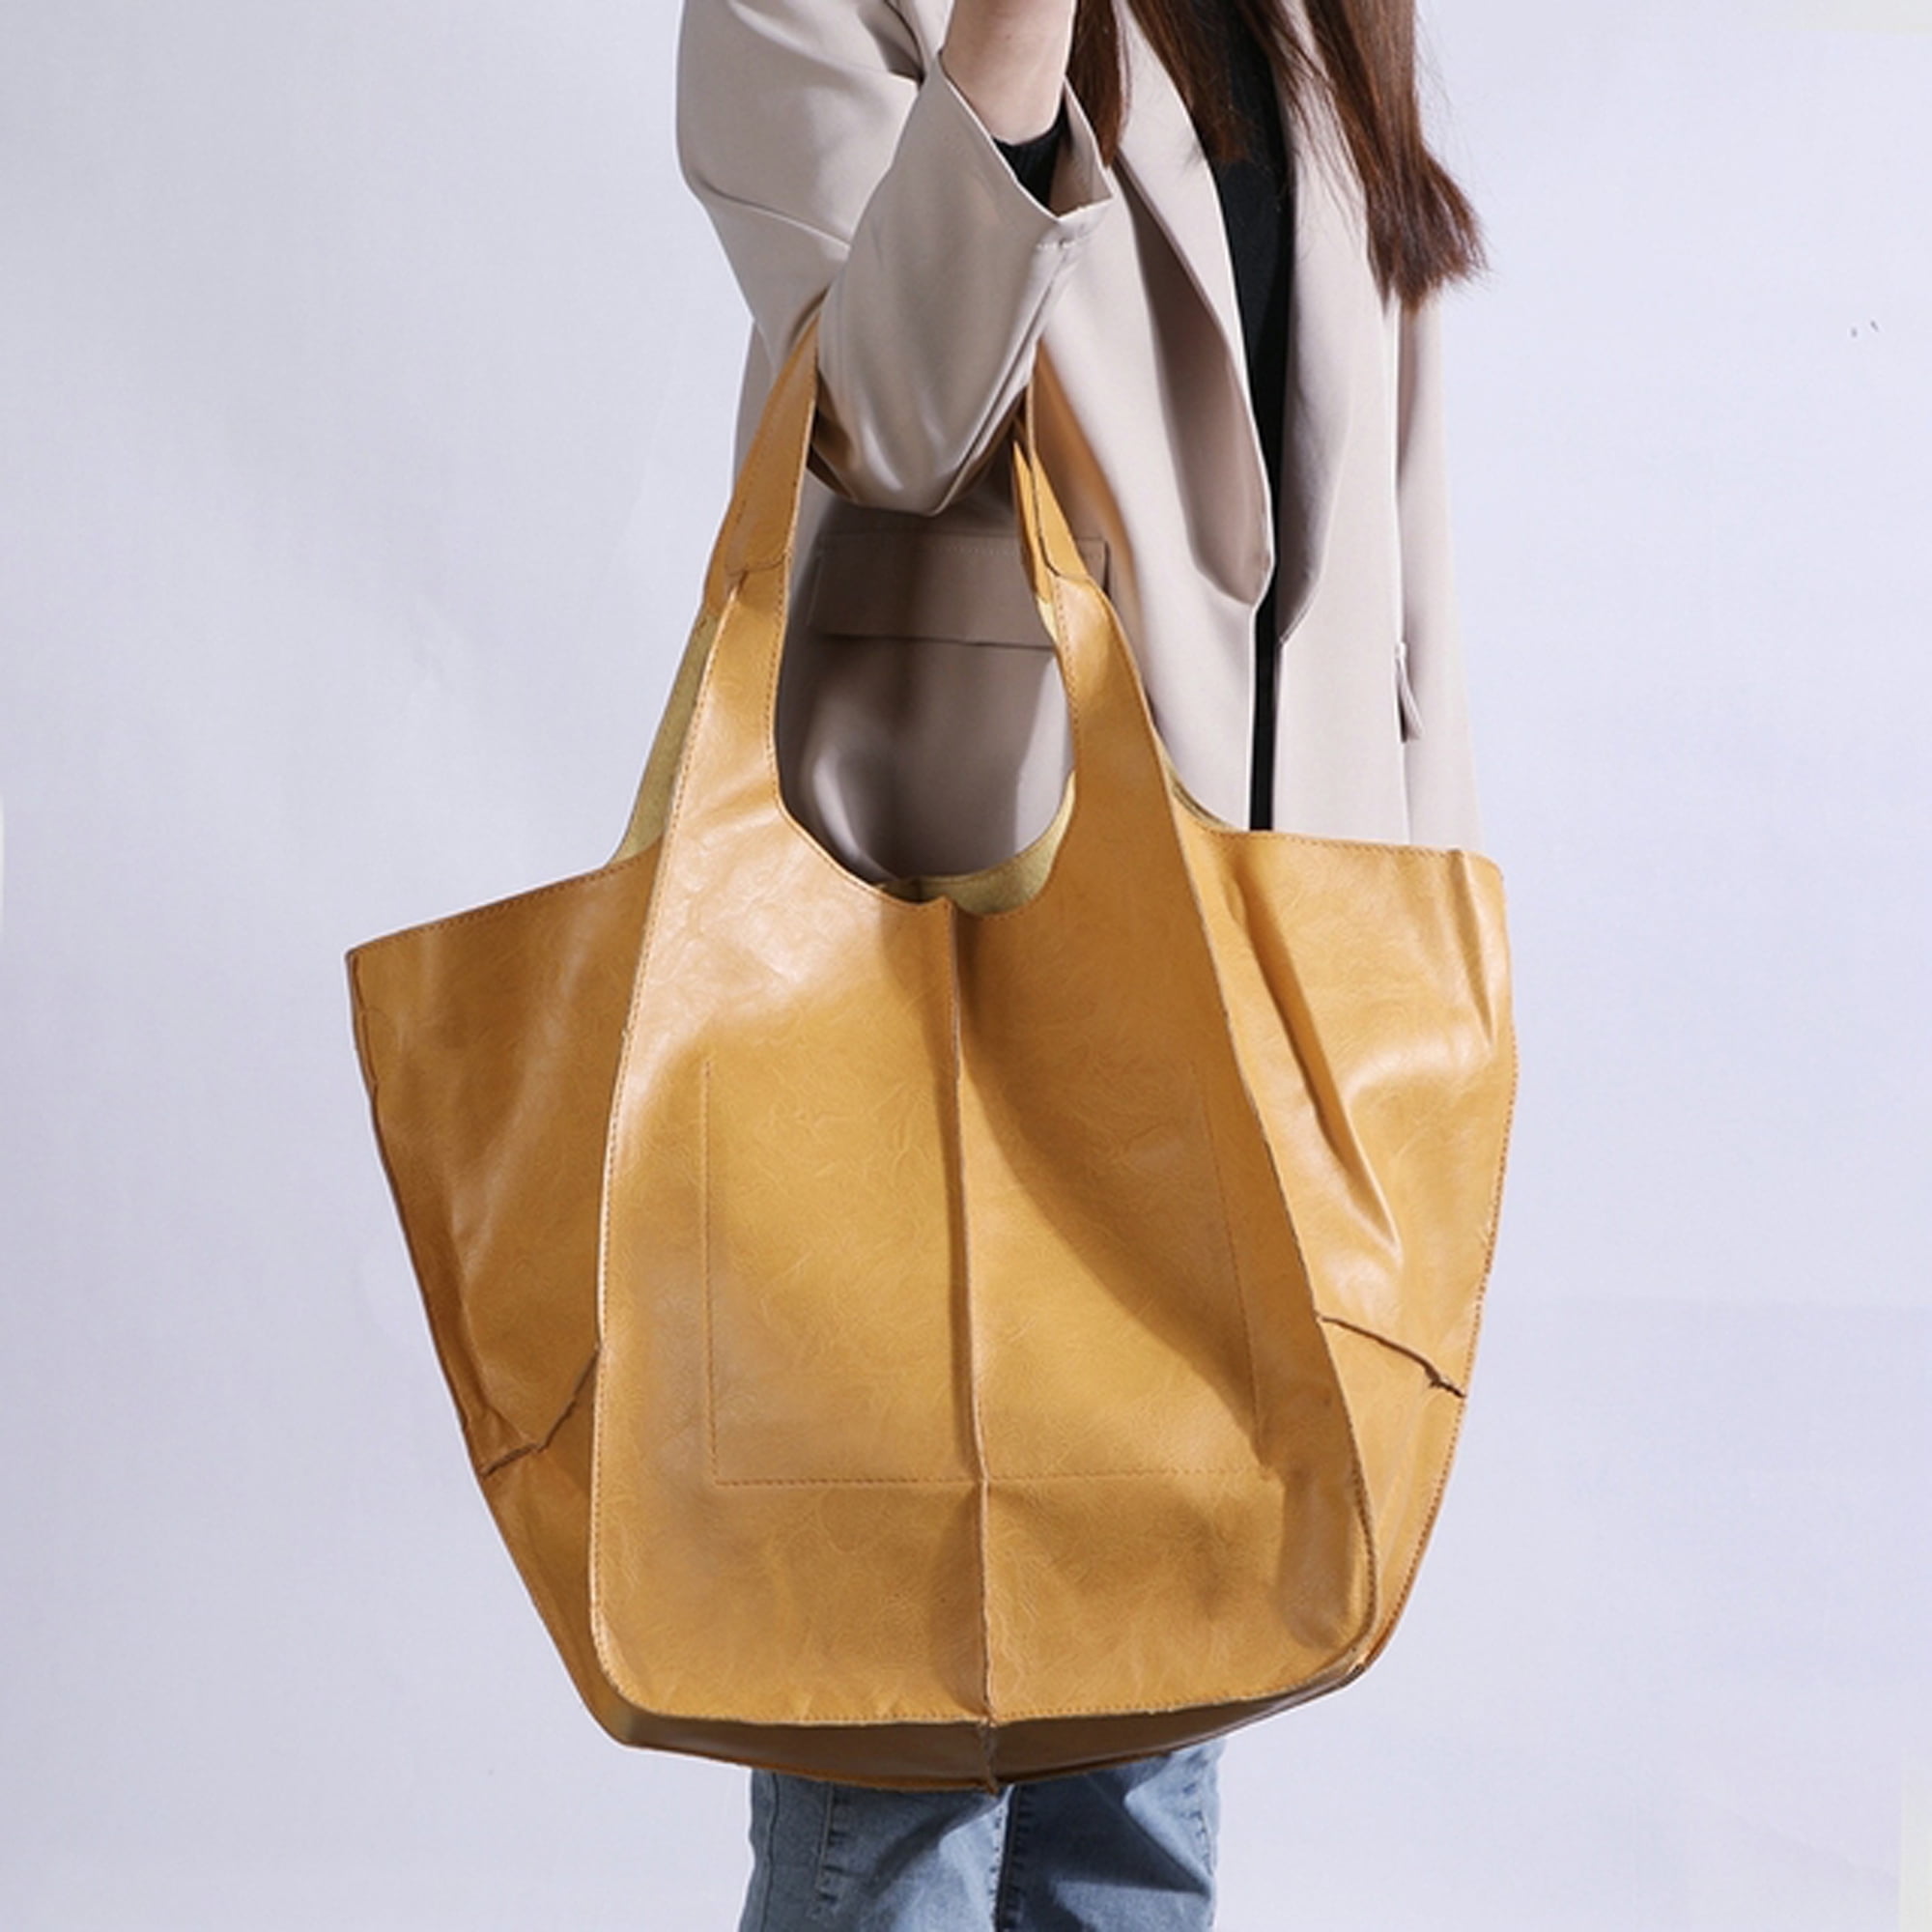  Tote Shoulder Bag for Women Large Purse and Handbag